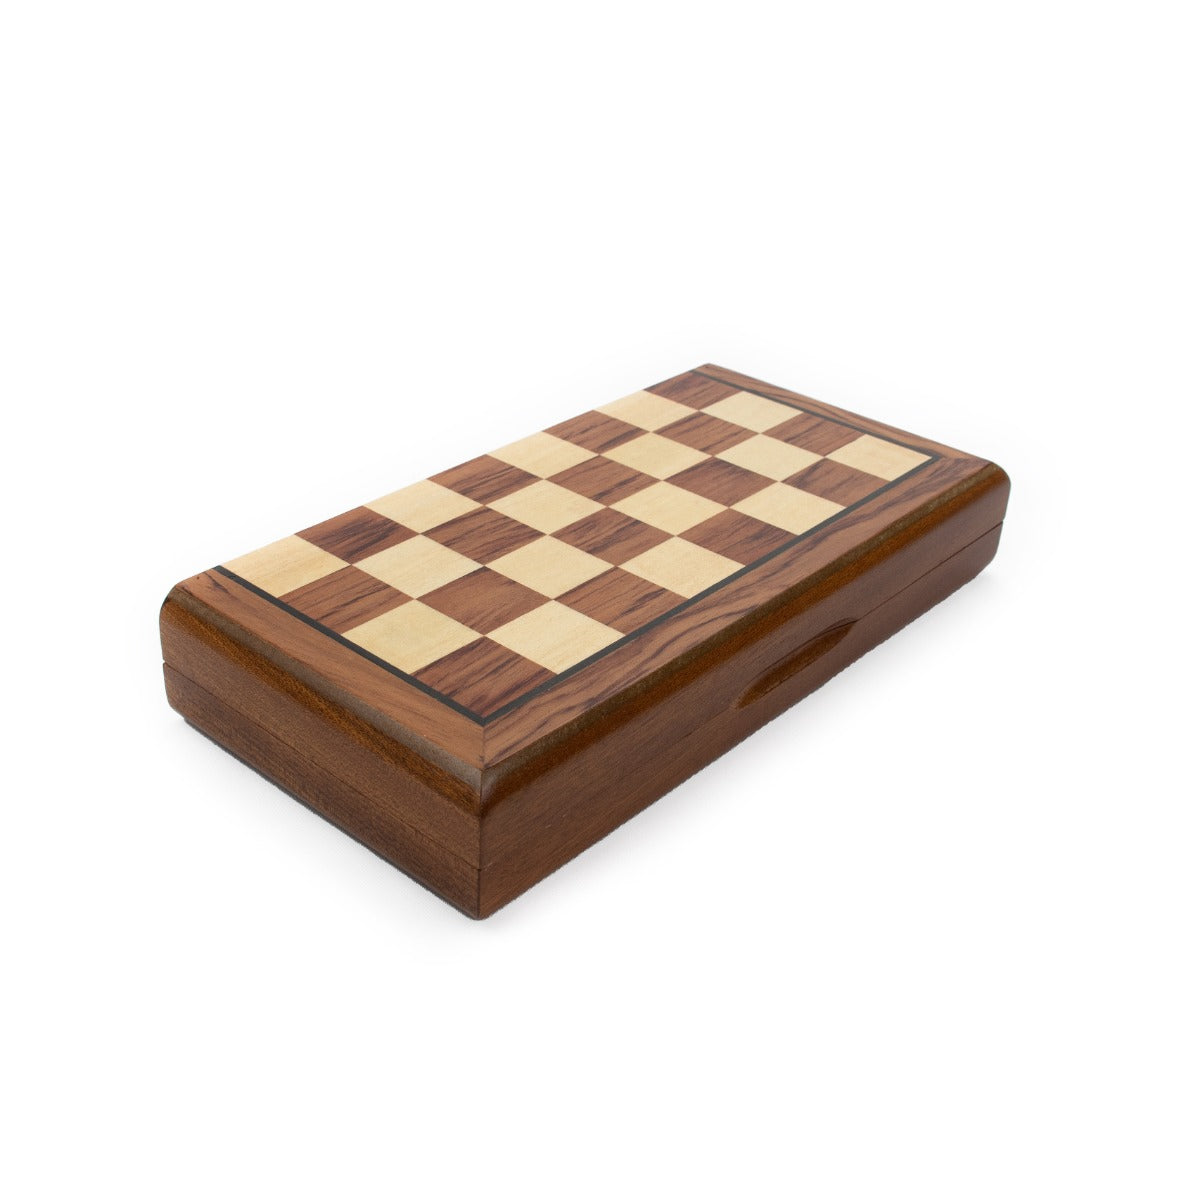 LPG Club Chess Set - Brown Woodgrain